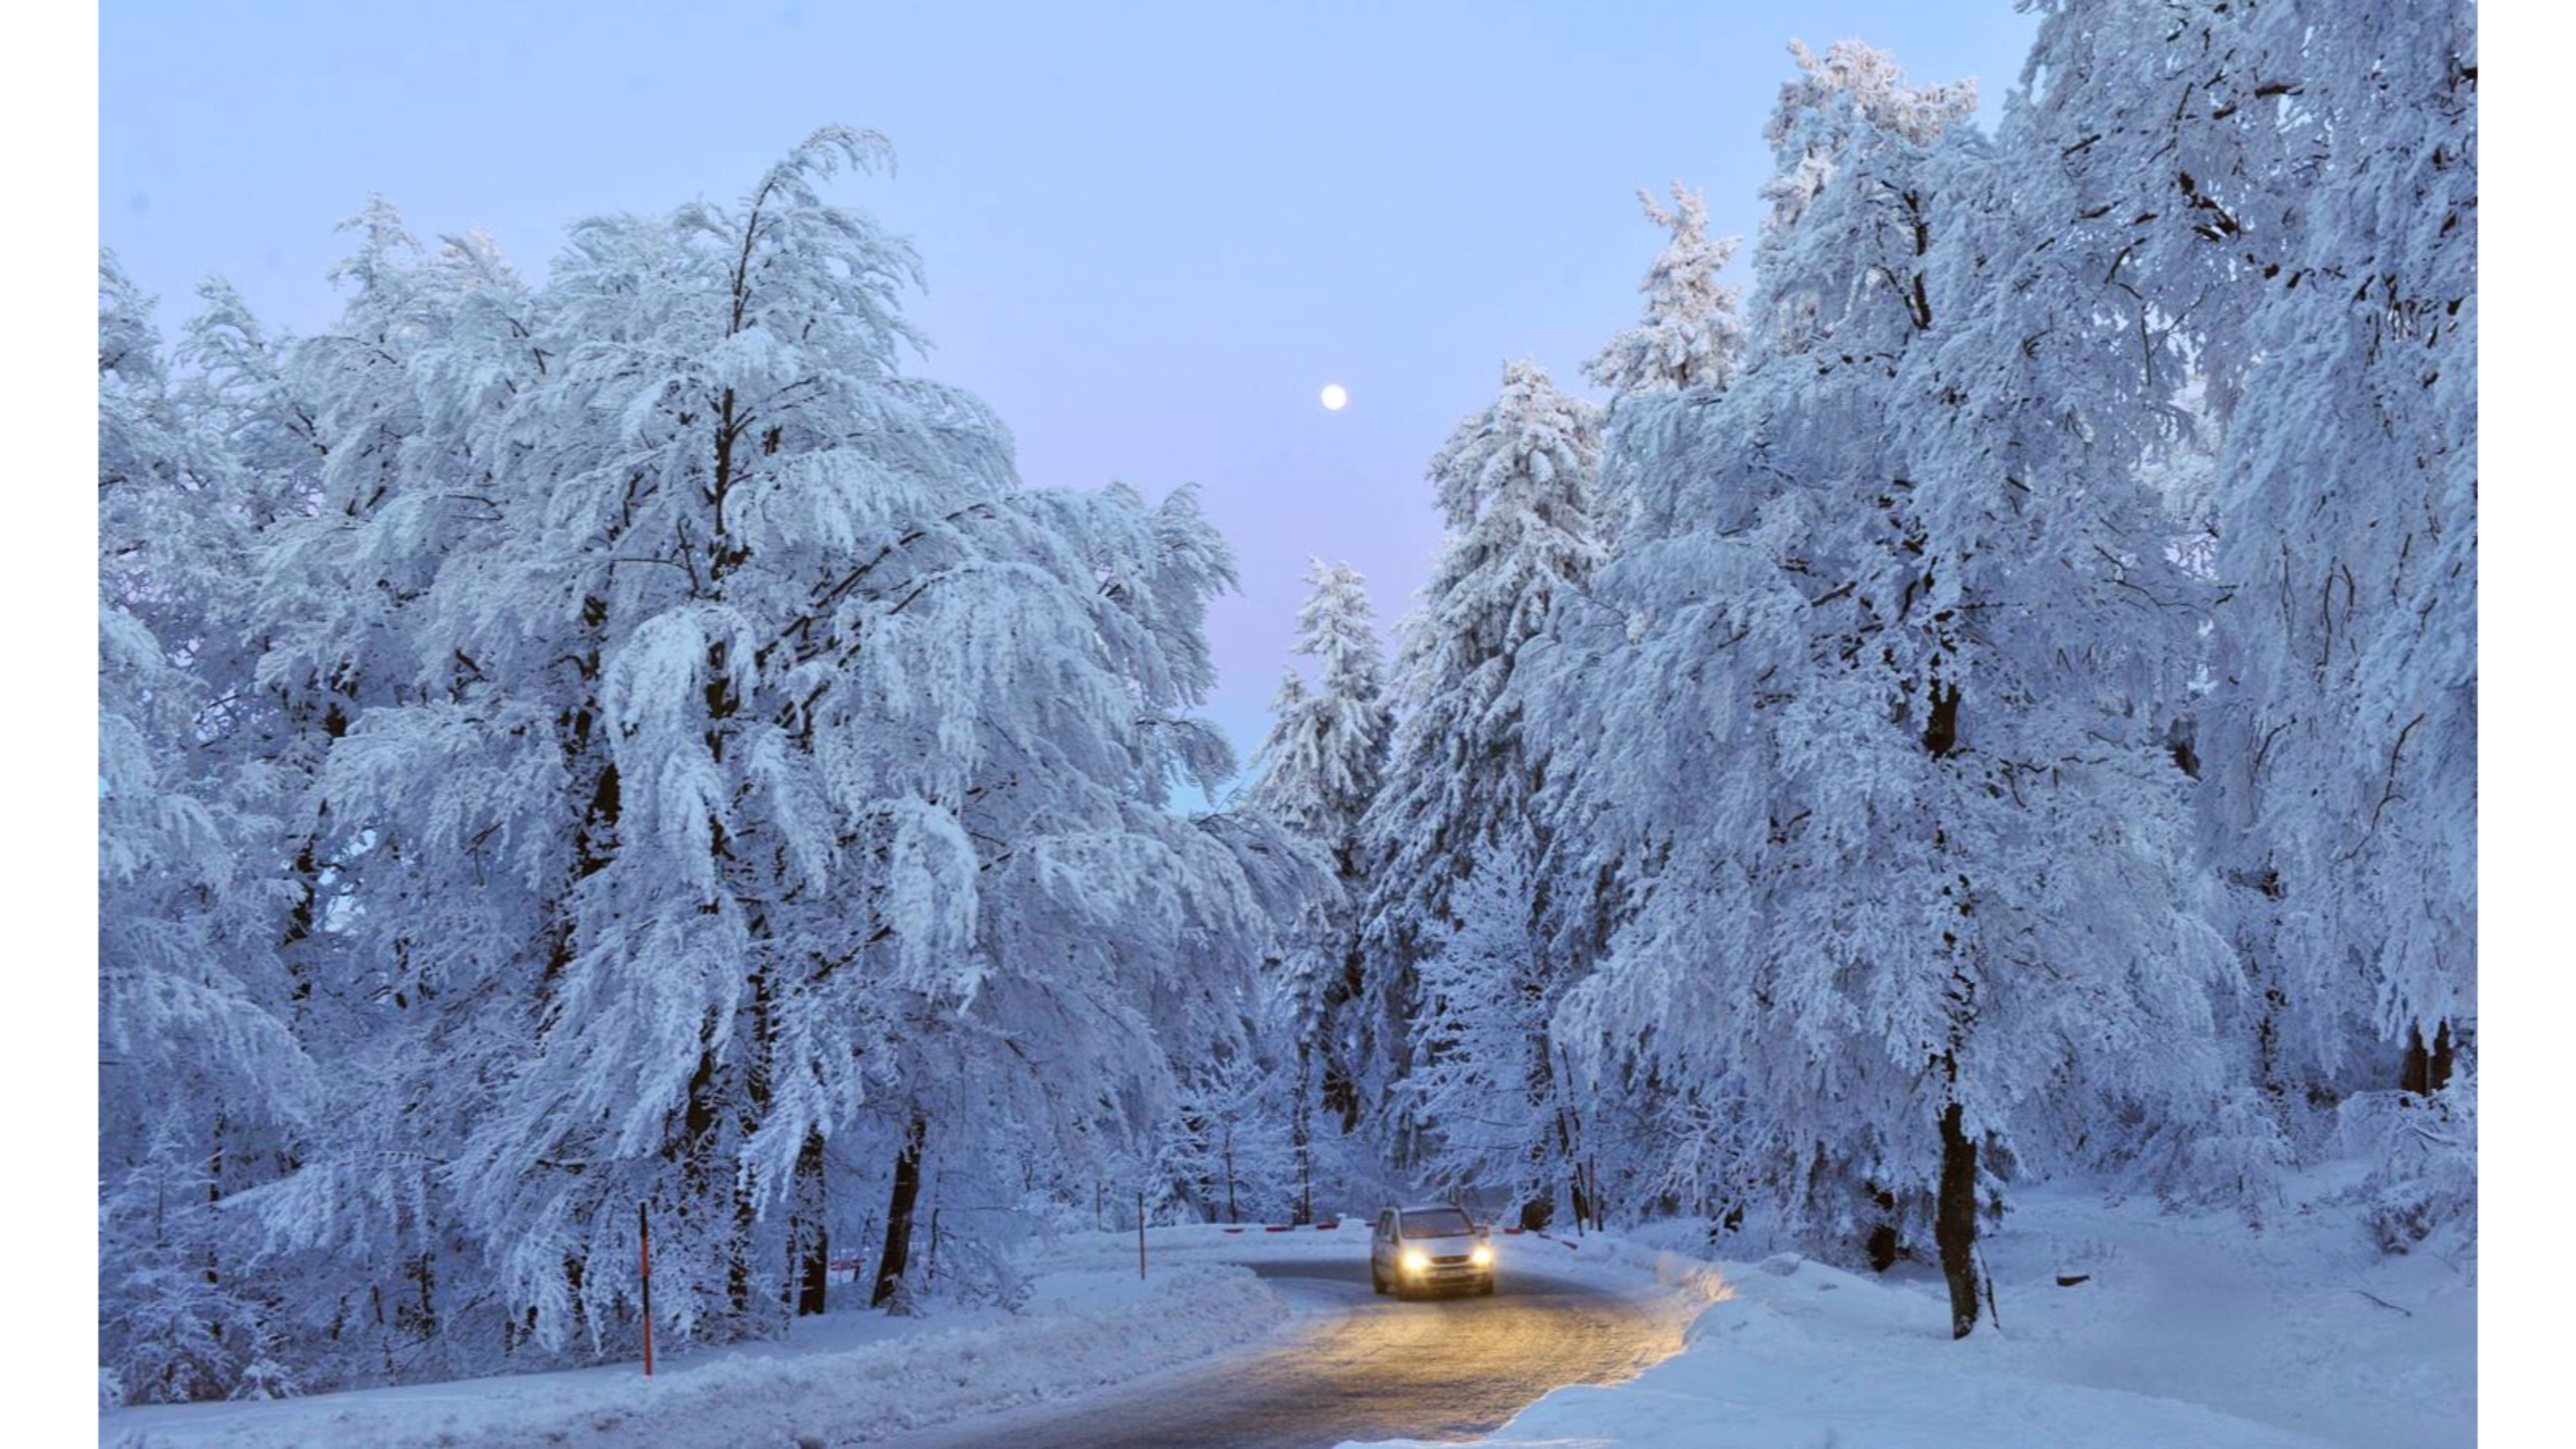 Скачать картинку Зима, Снег, Дорога, Дерево, Автомобиль, Сделано Человеком в телефон бесплатно.